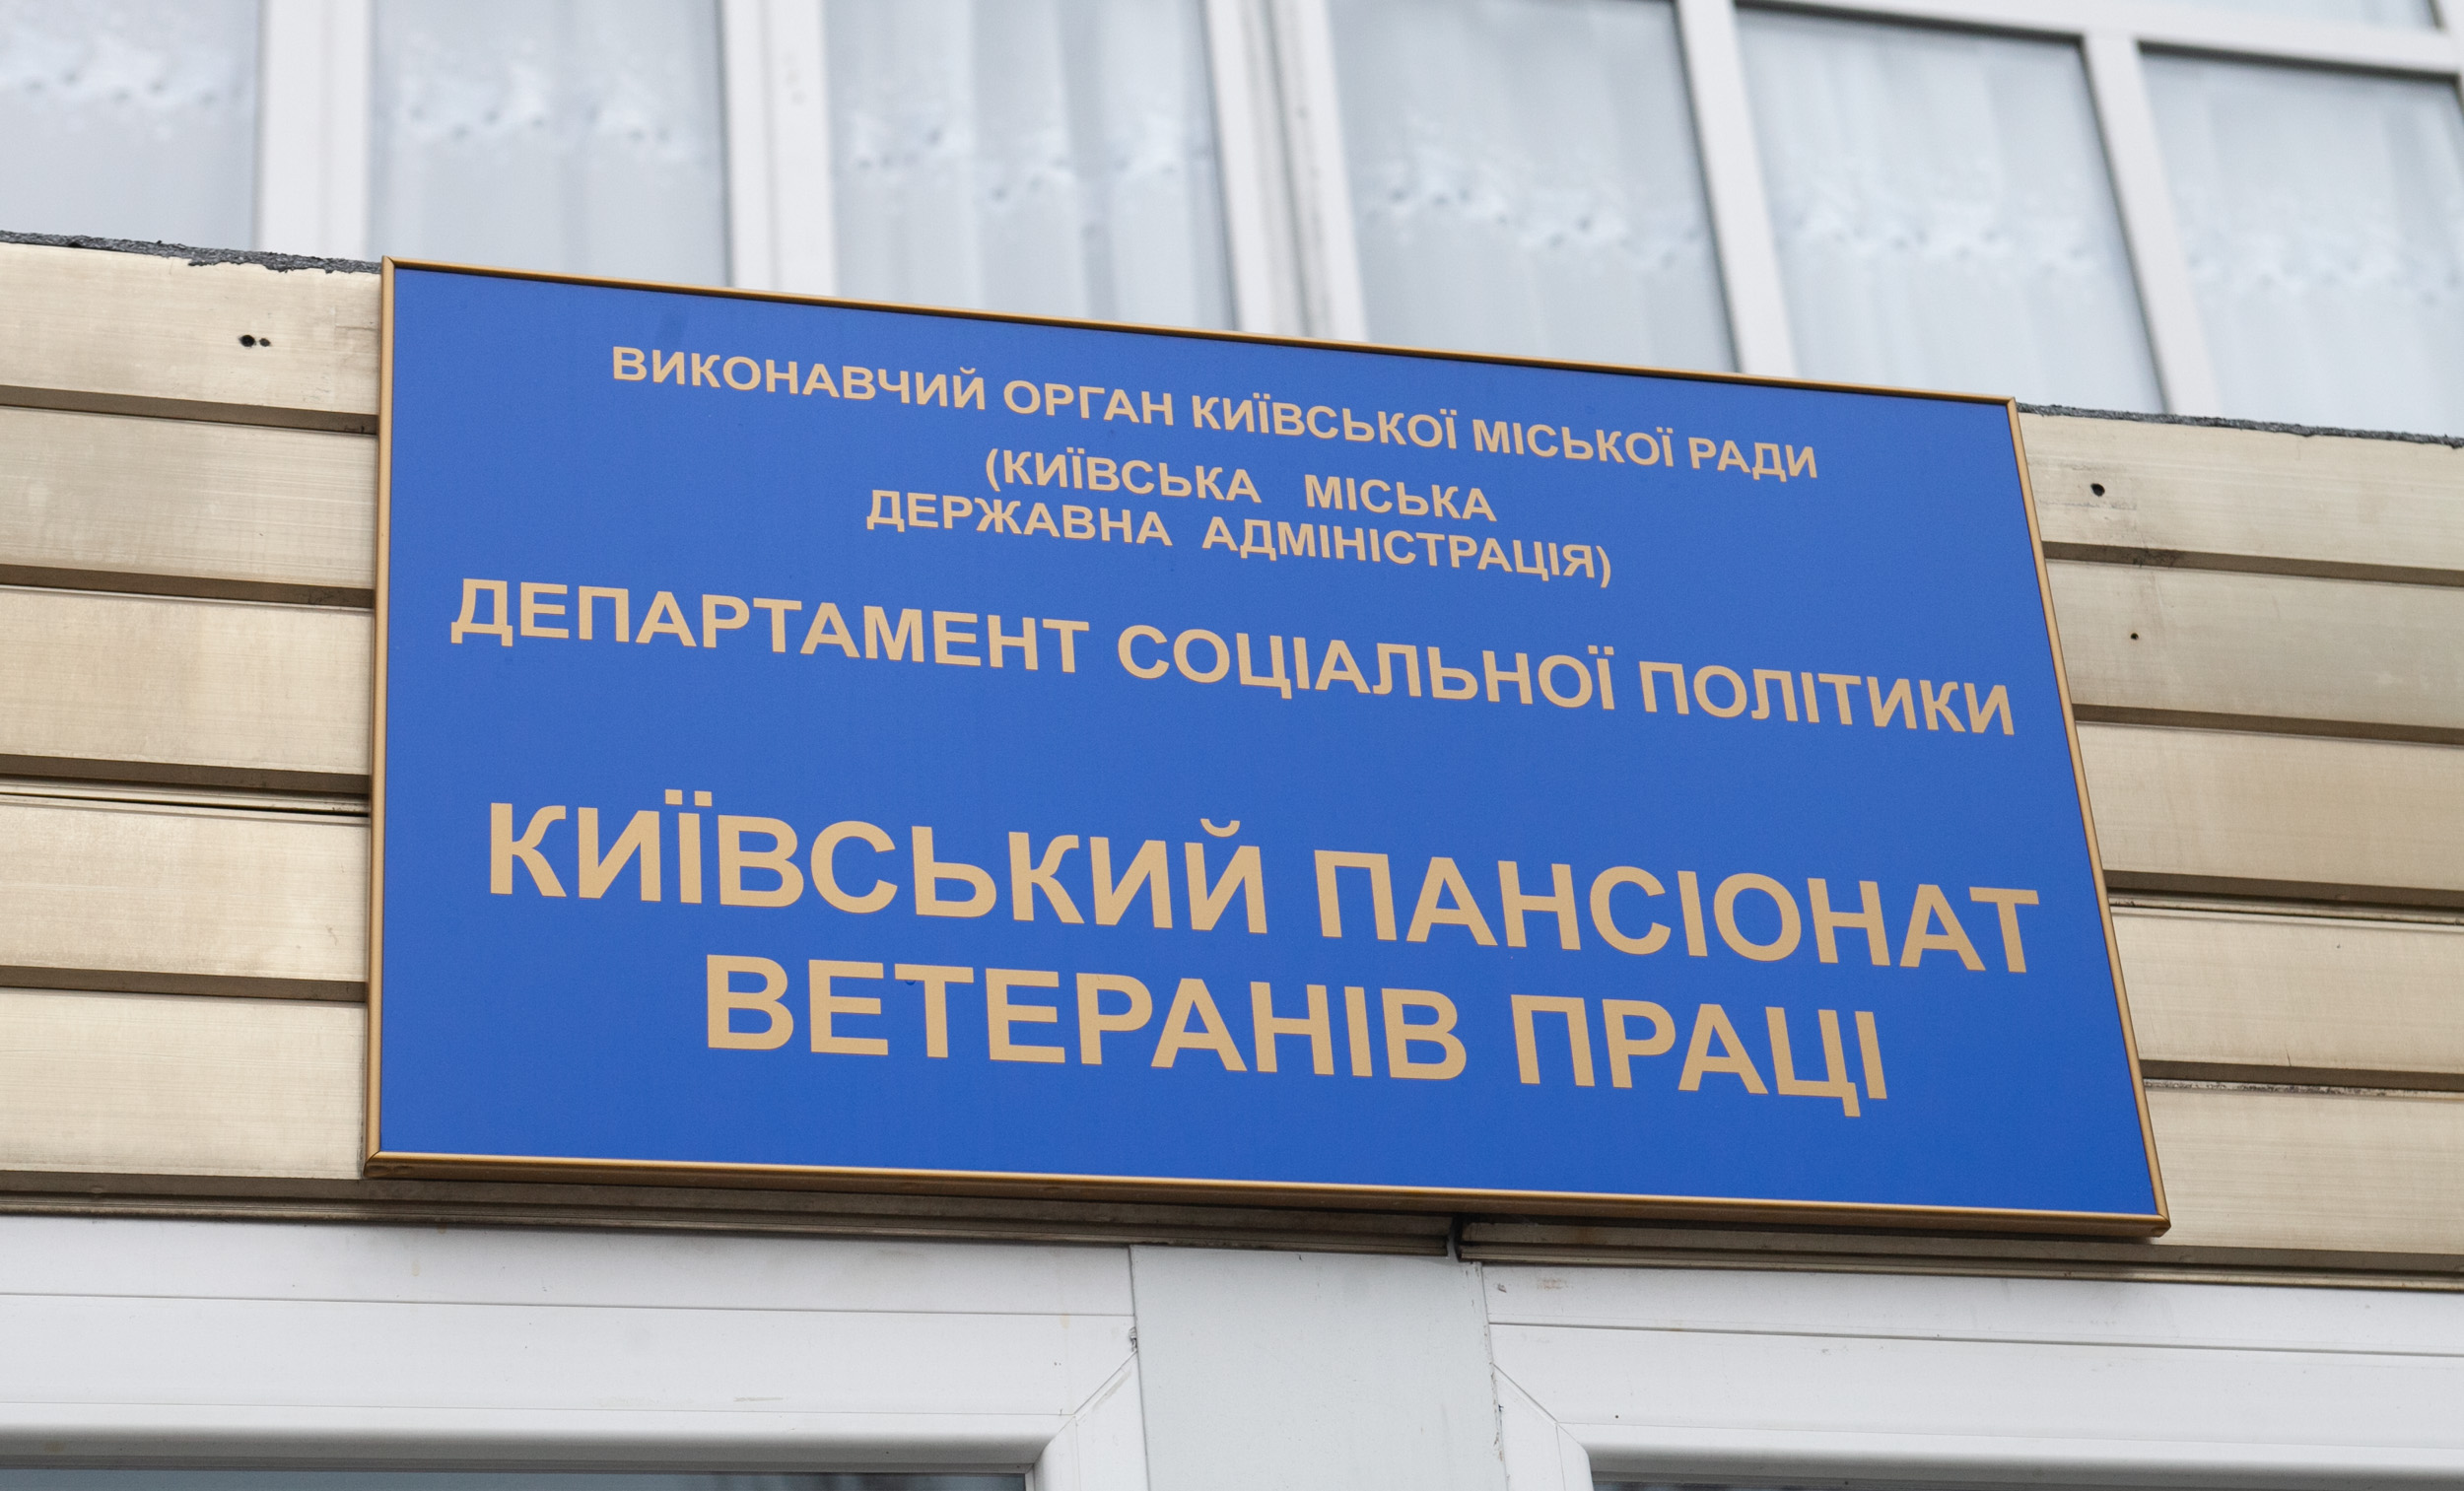 Проект капремонту актової зали Київського пансіонату ветеранів праці обійдеться в 1,5 млн гривень